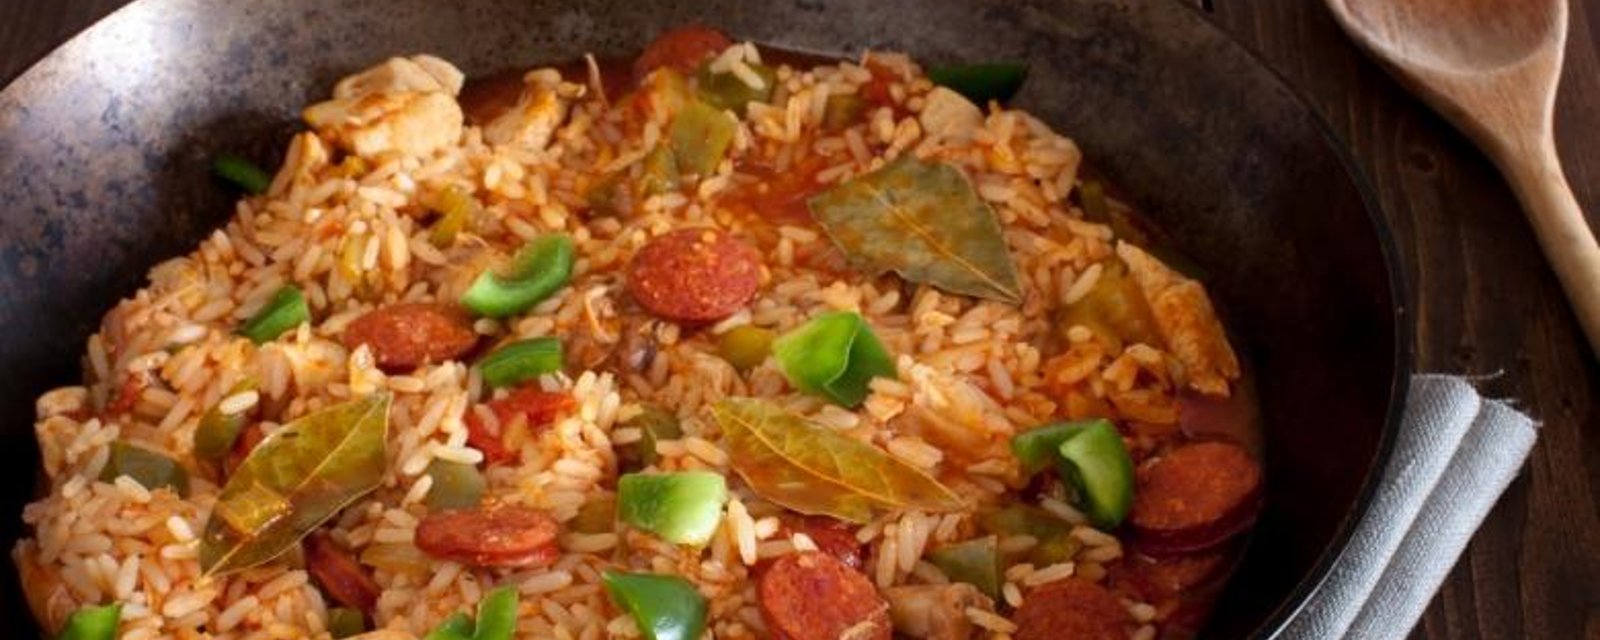 Découvrez la Jambalaya, faite de riz, de saucisses et de morceaux de poulet...une recette à découvrir